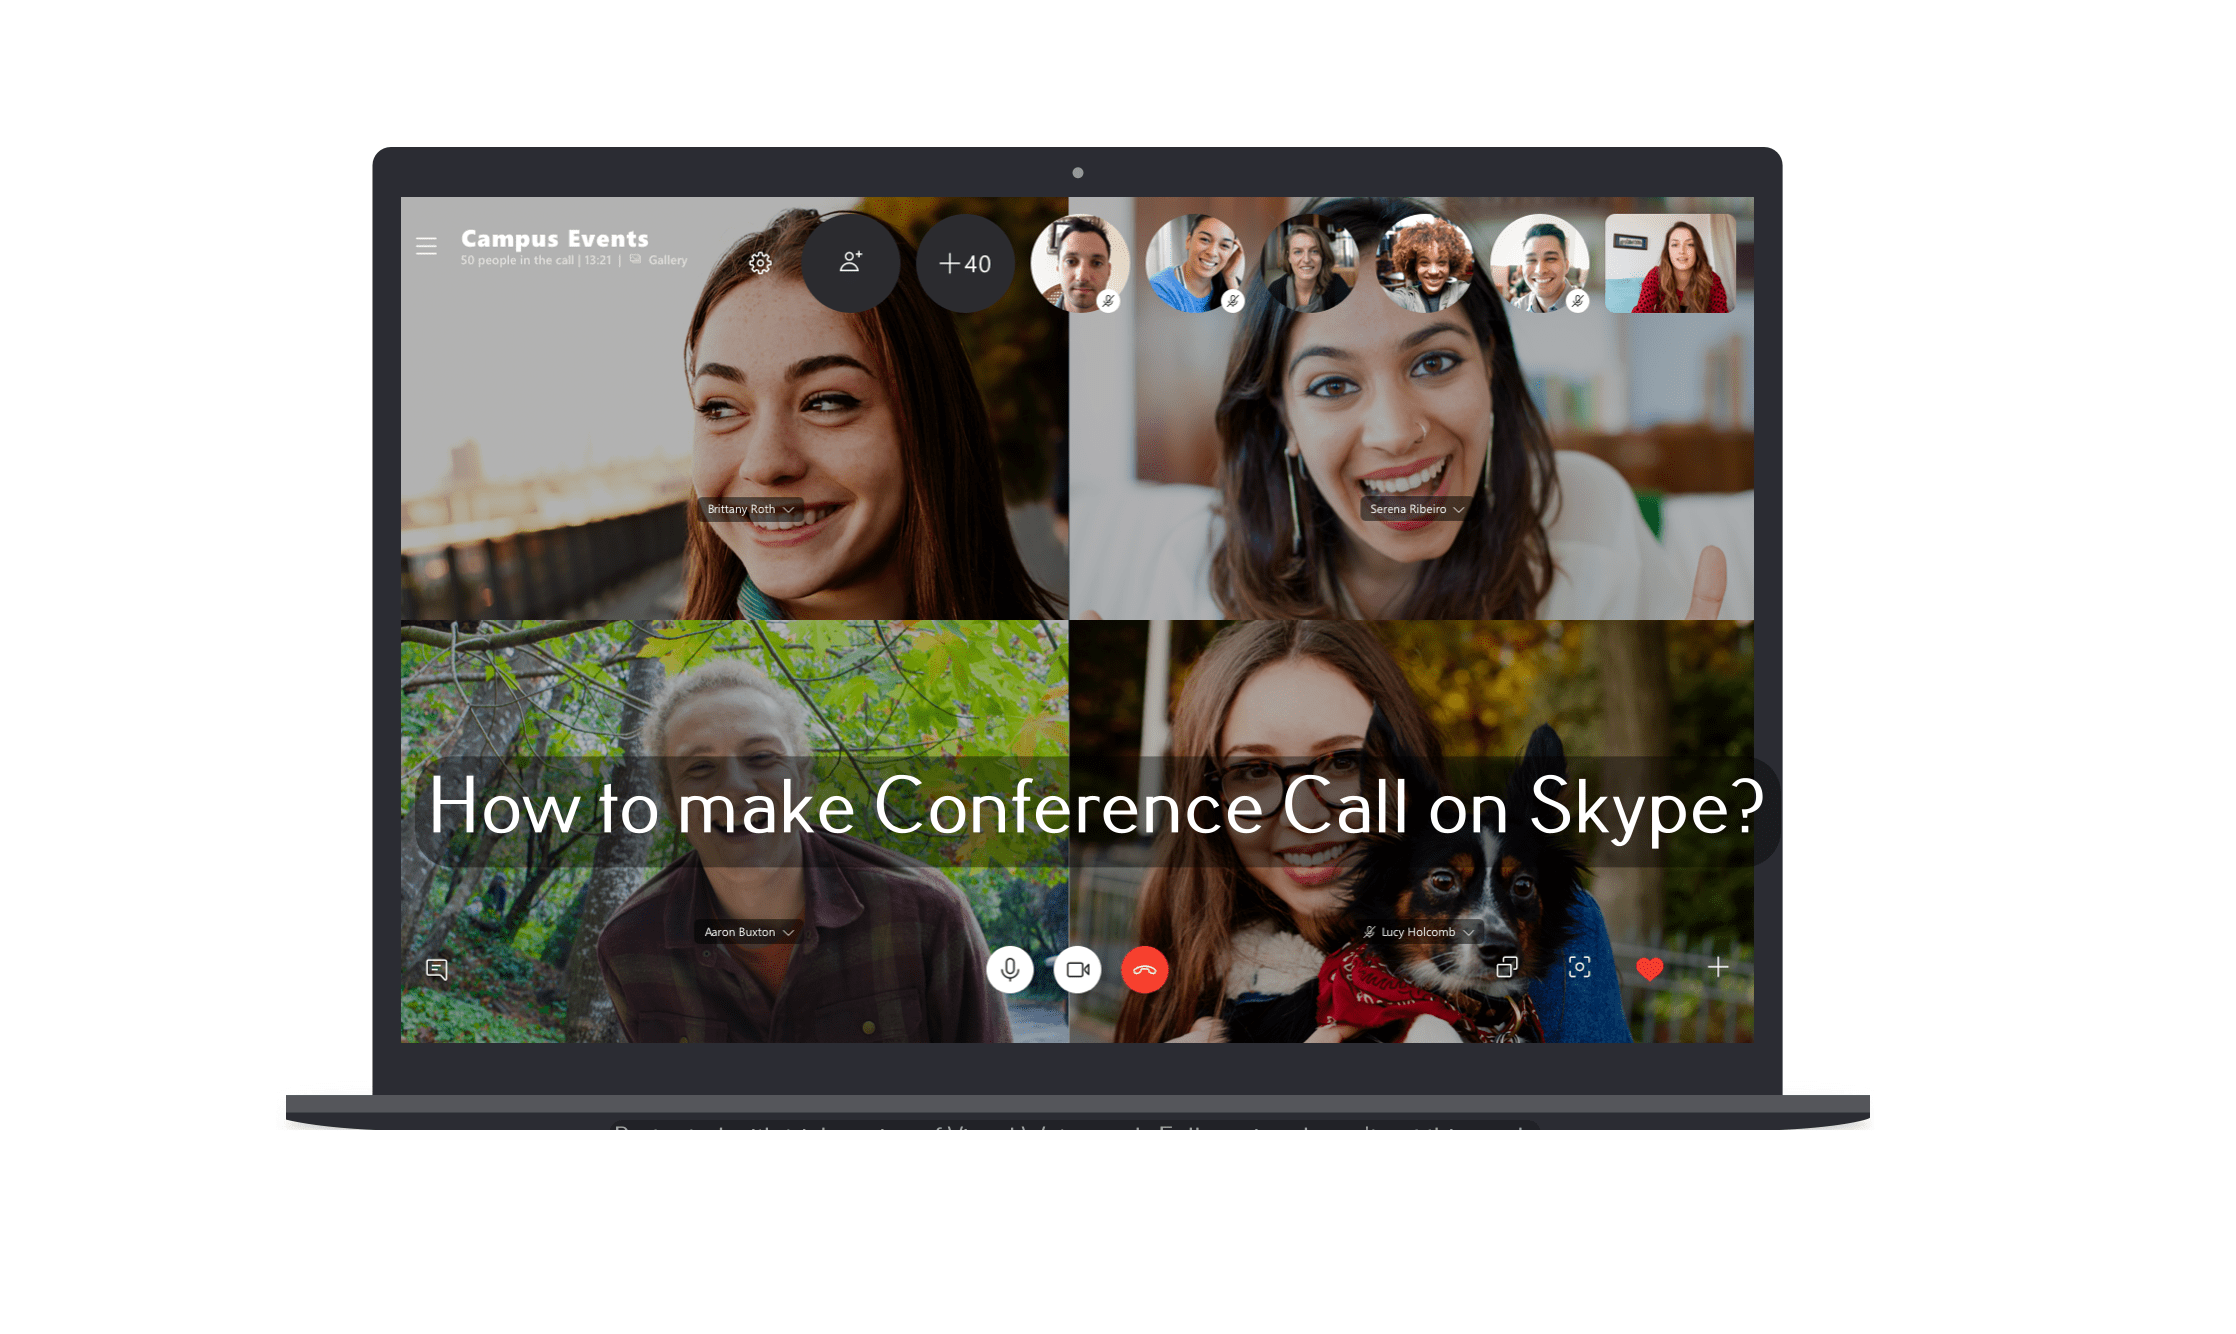 Nola konfiguratu konferentzia deia Skype (Taldearen deia)